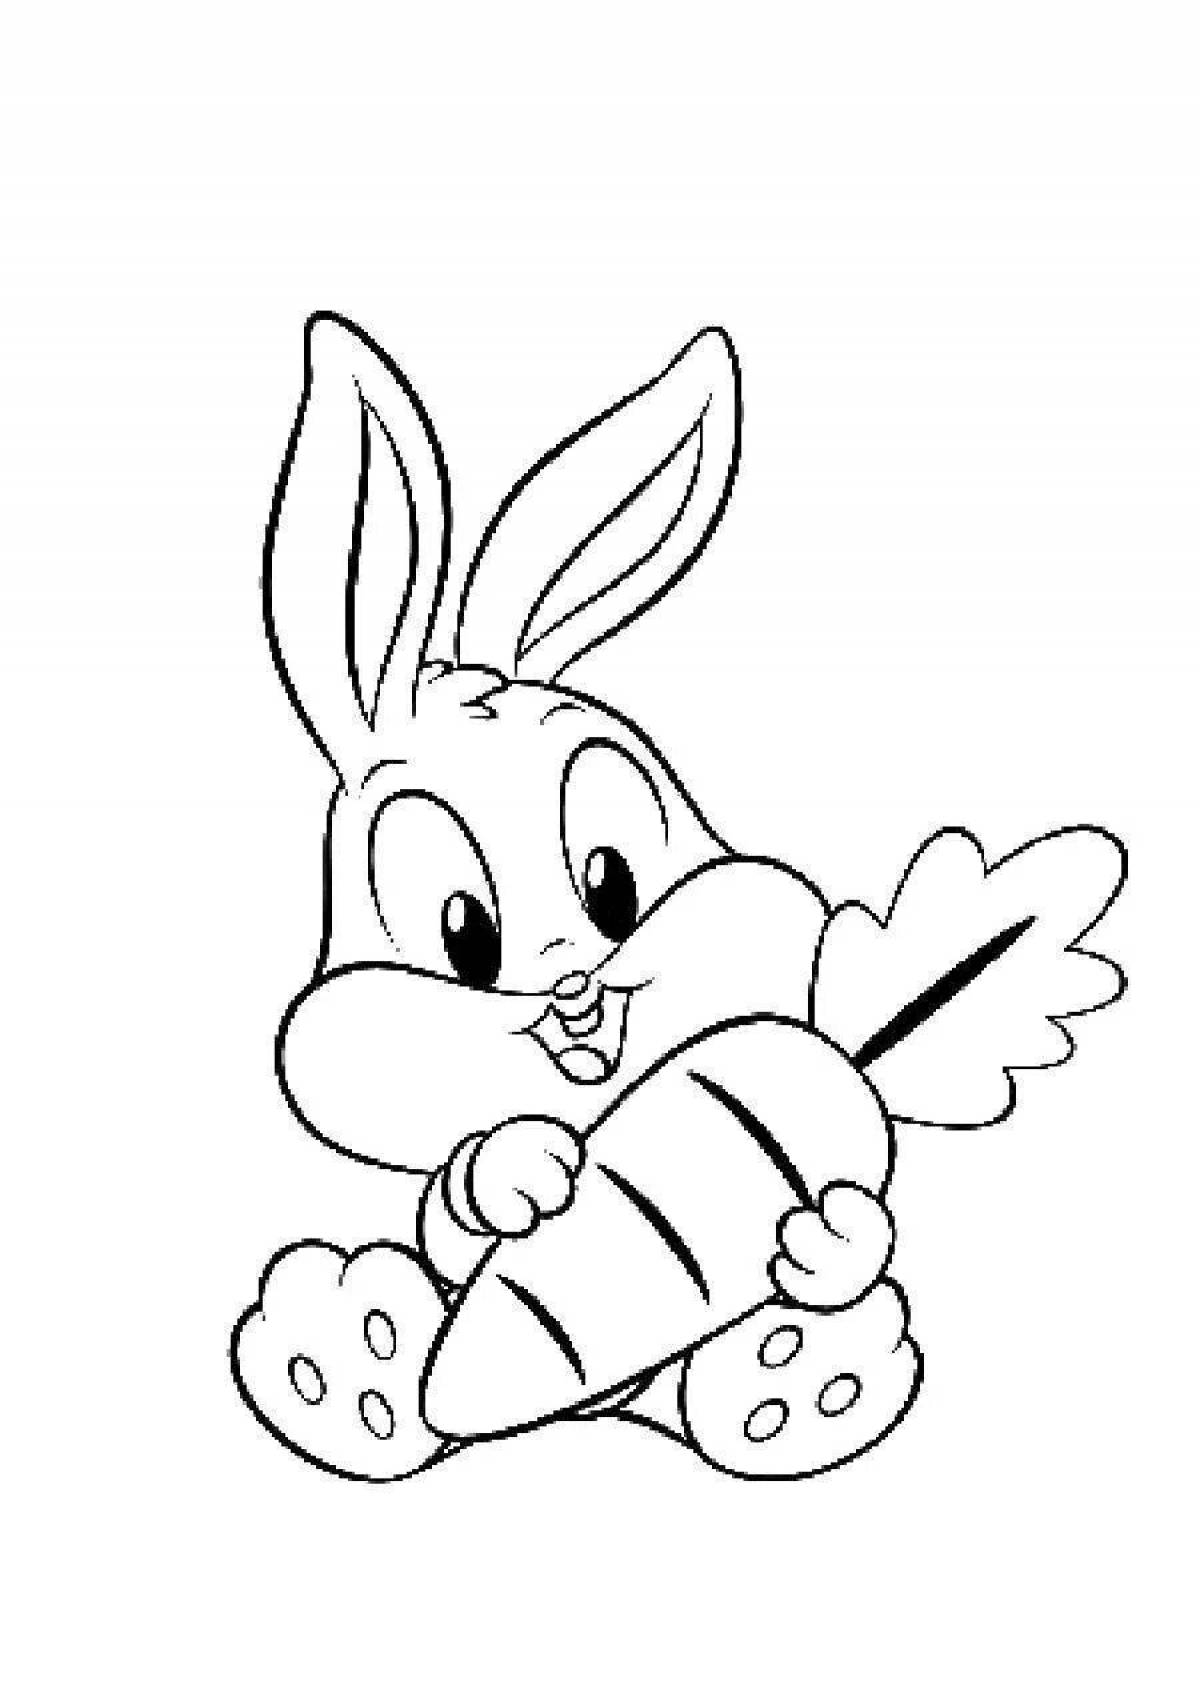 Playful coloring book rabbit man